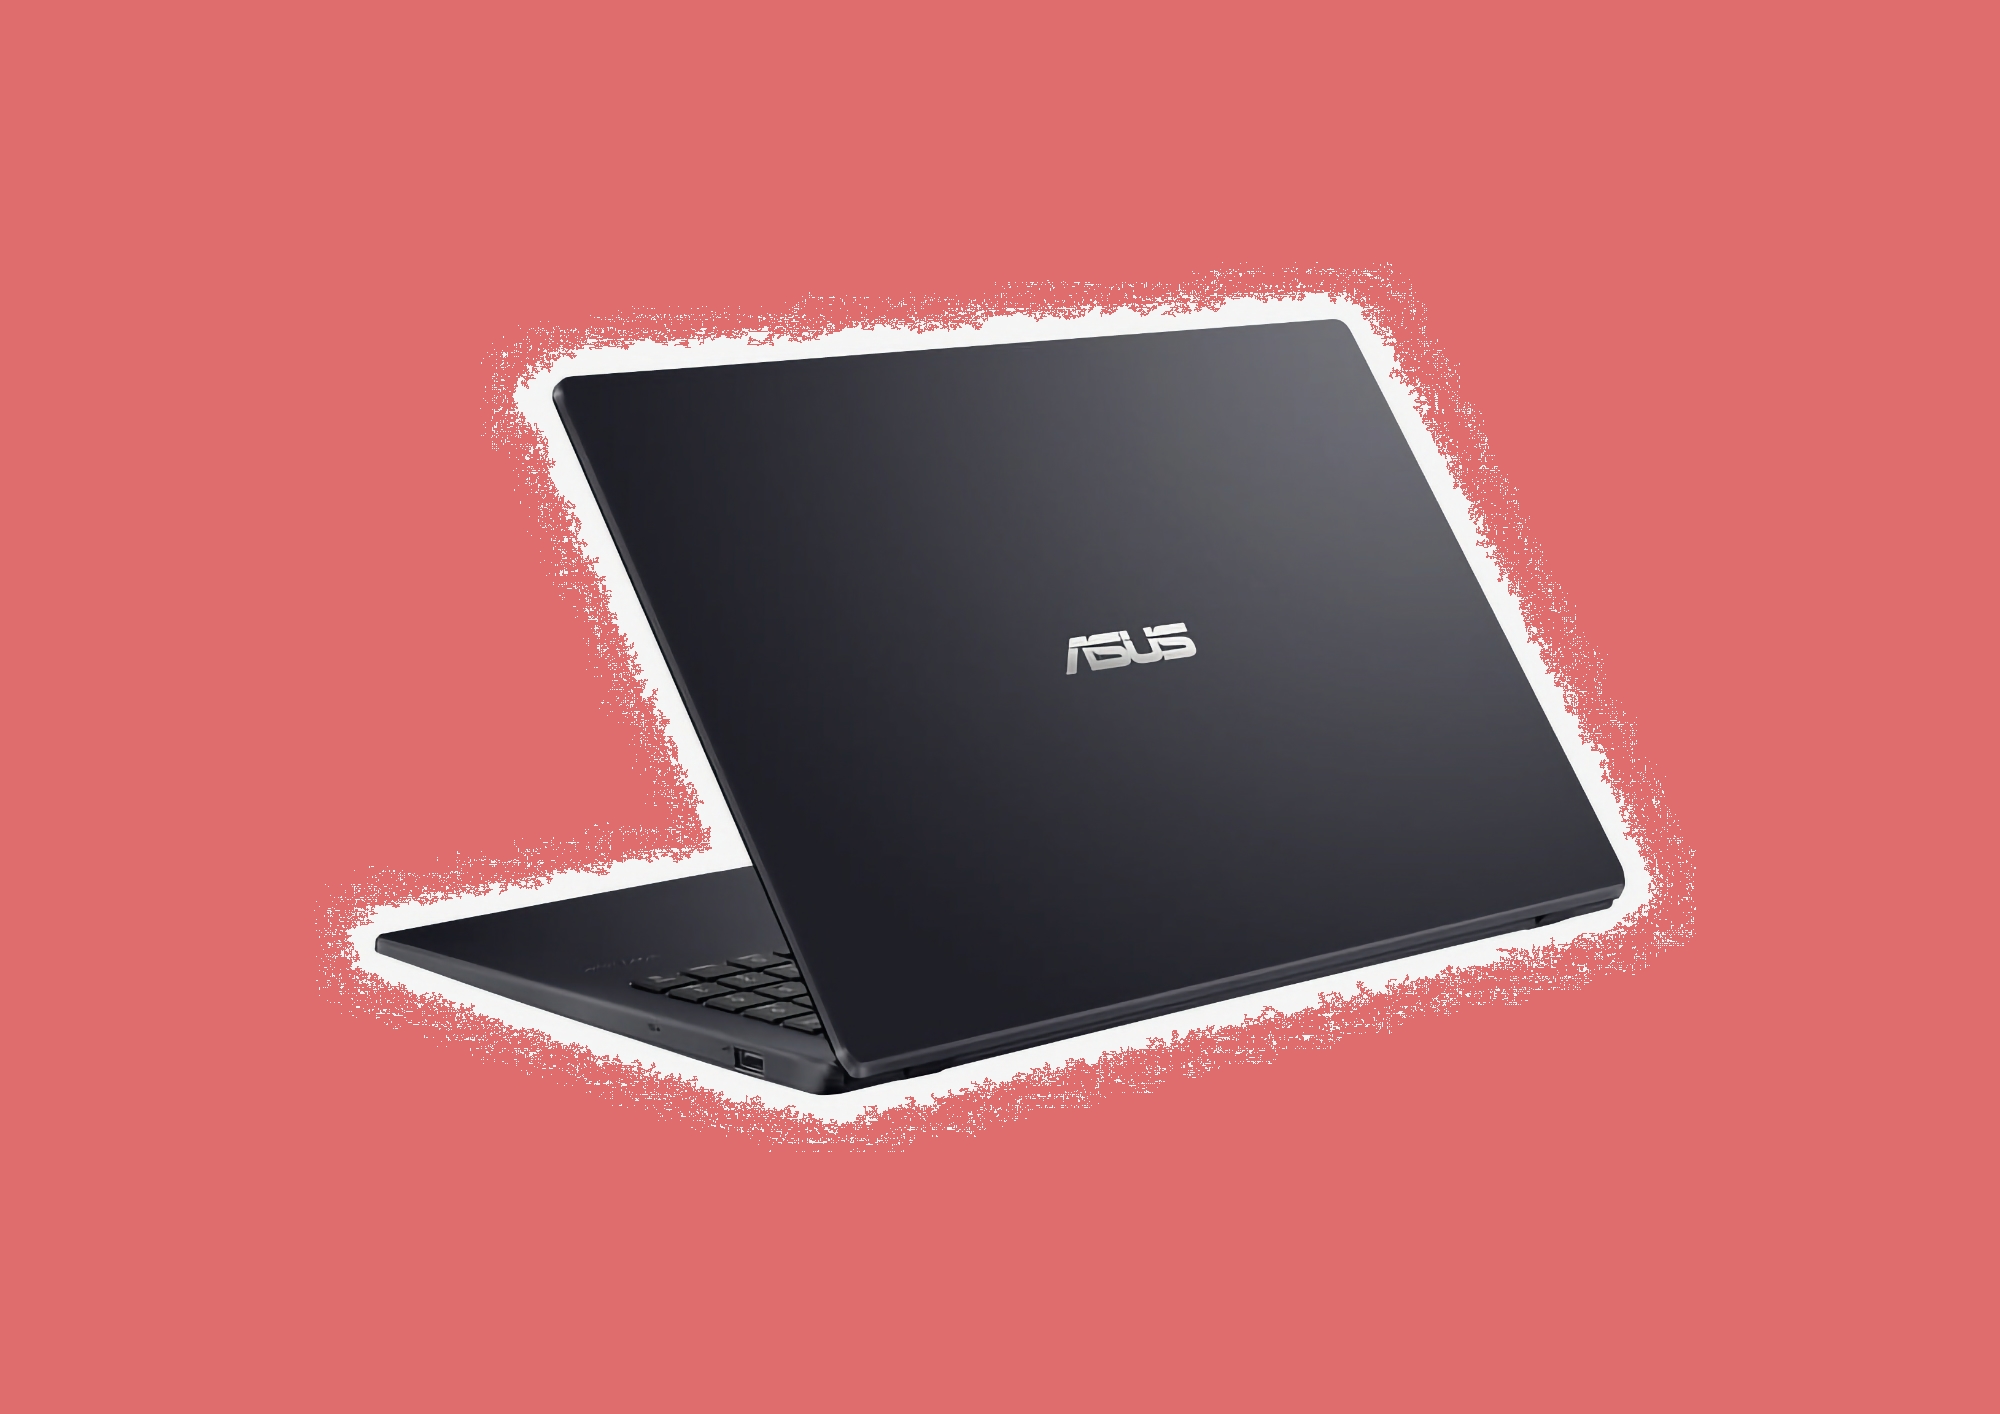 ASUS vil avduke en bærbar PC med Snapdragon X Elite-prosessor om bord 20. mars